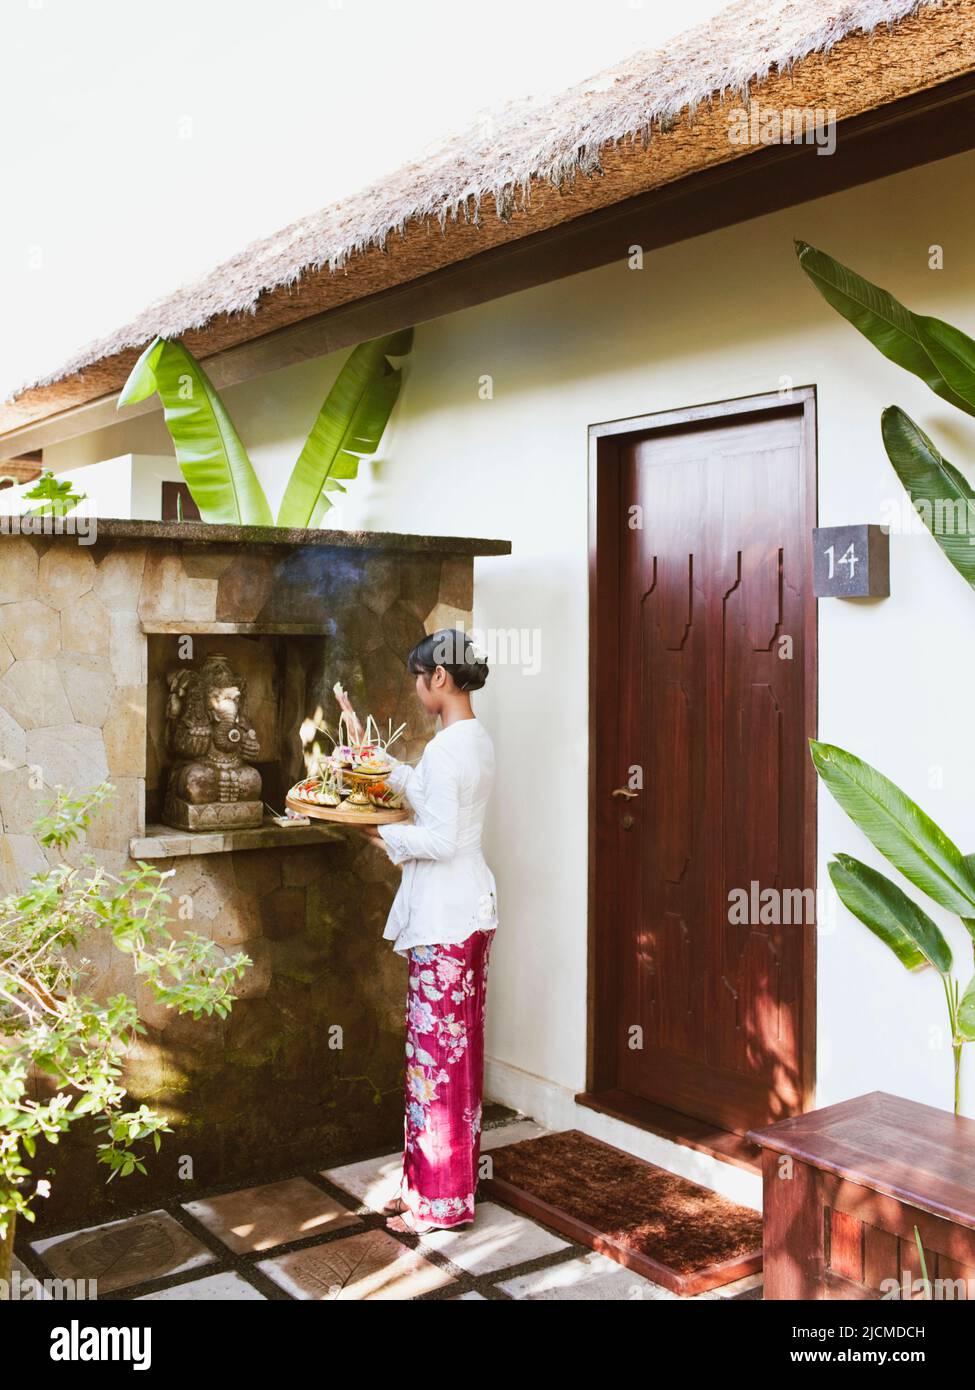 Balinesische Frau, die morgens dem Hindu-Gott Ganesh im Raum #14 in Ubud Hanging Gardens, Bali, Indonesien, anbietet. Die Balinesen machen morgens o Stockfoto